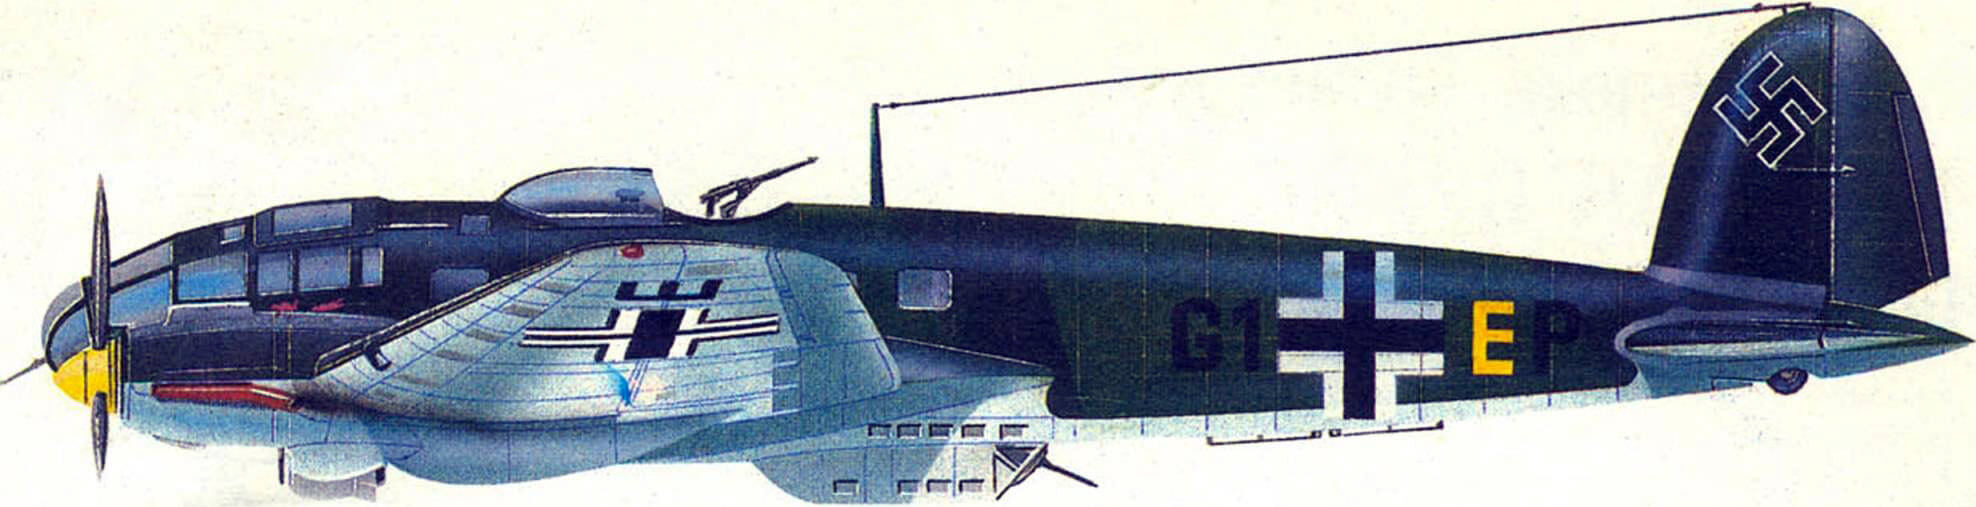 Heinkel 111 H-2